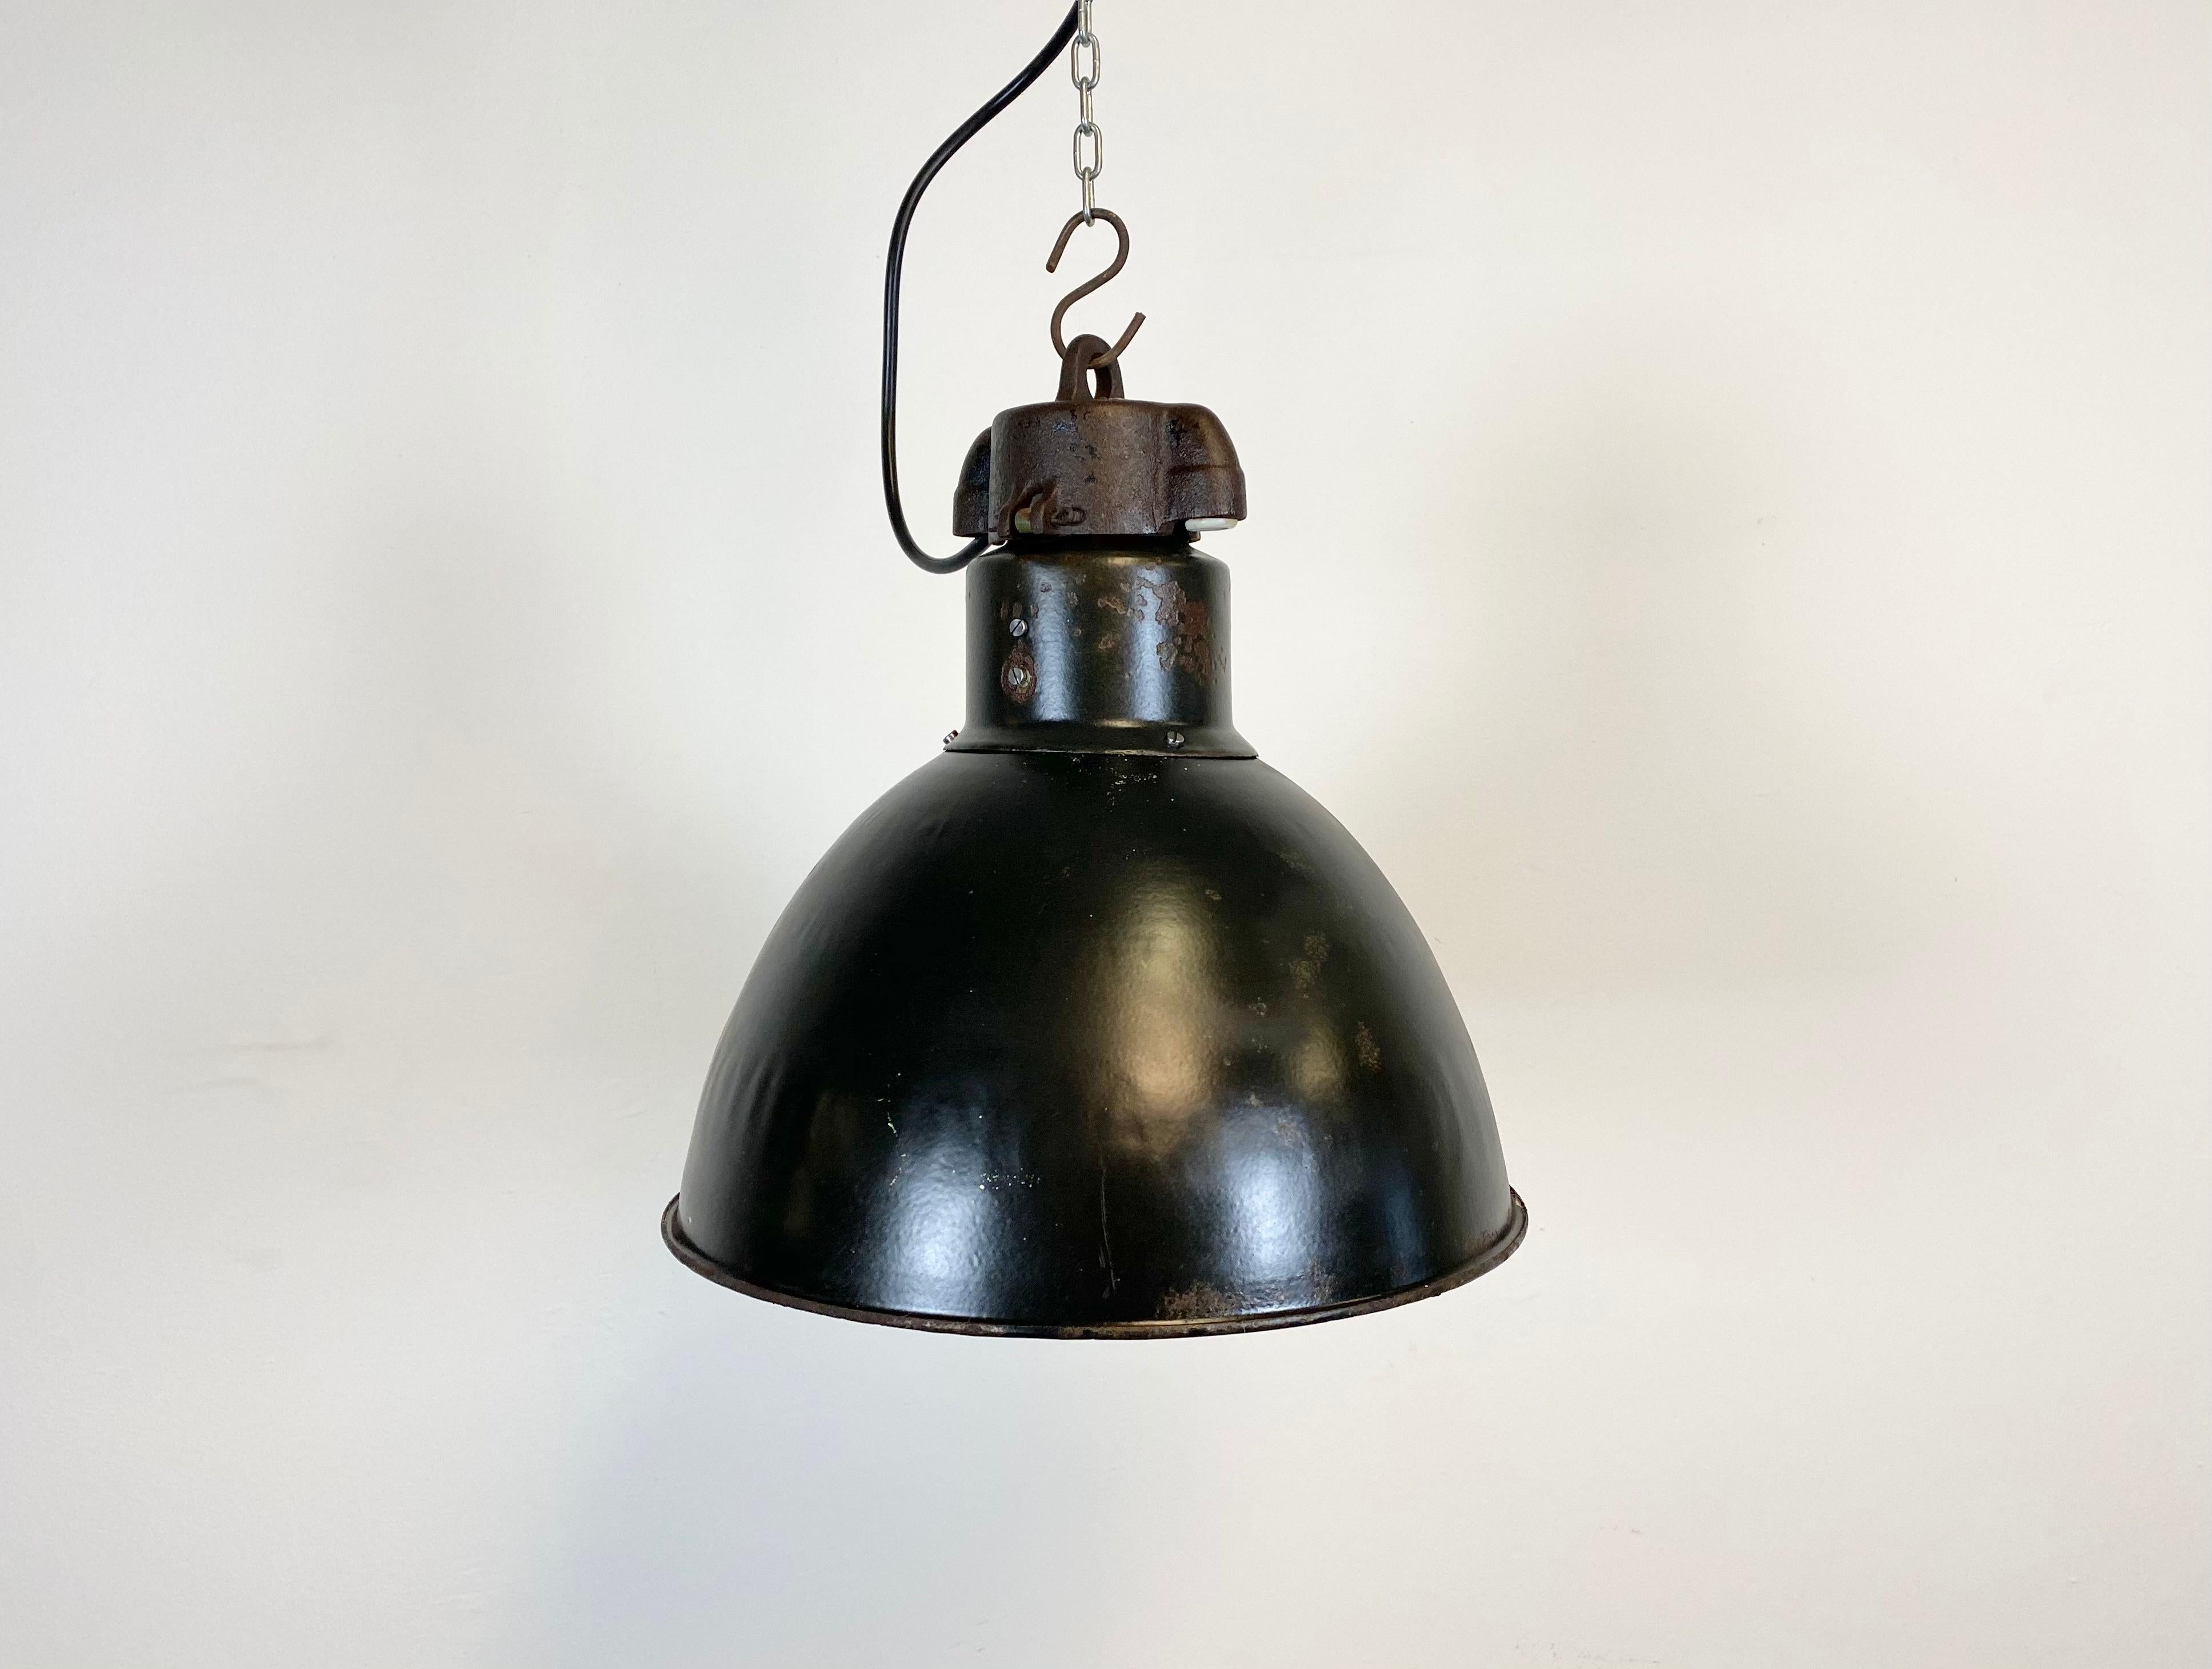 Czech Industrial Bauhaus Black Enamel Pendant Light, 1930s For Sale